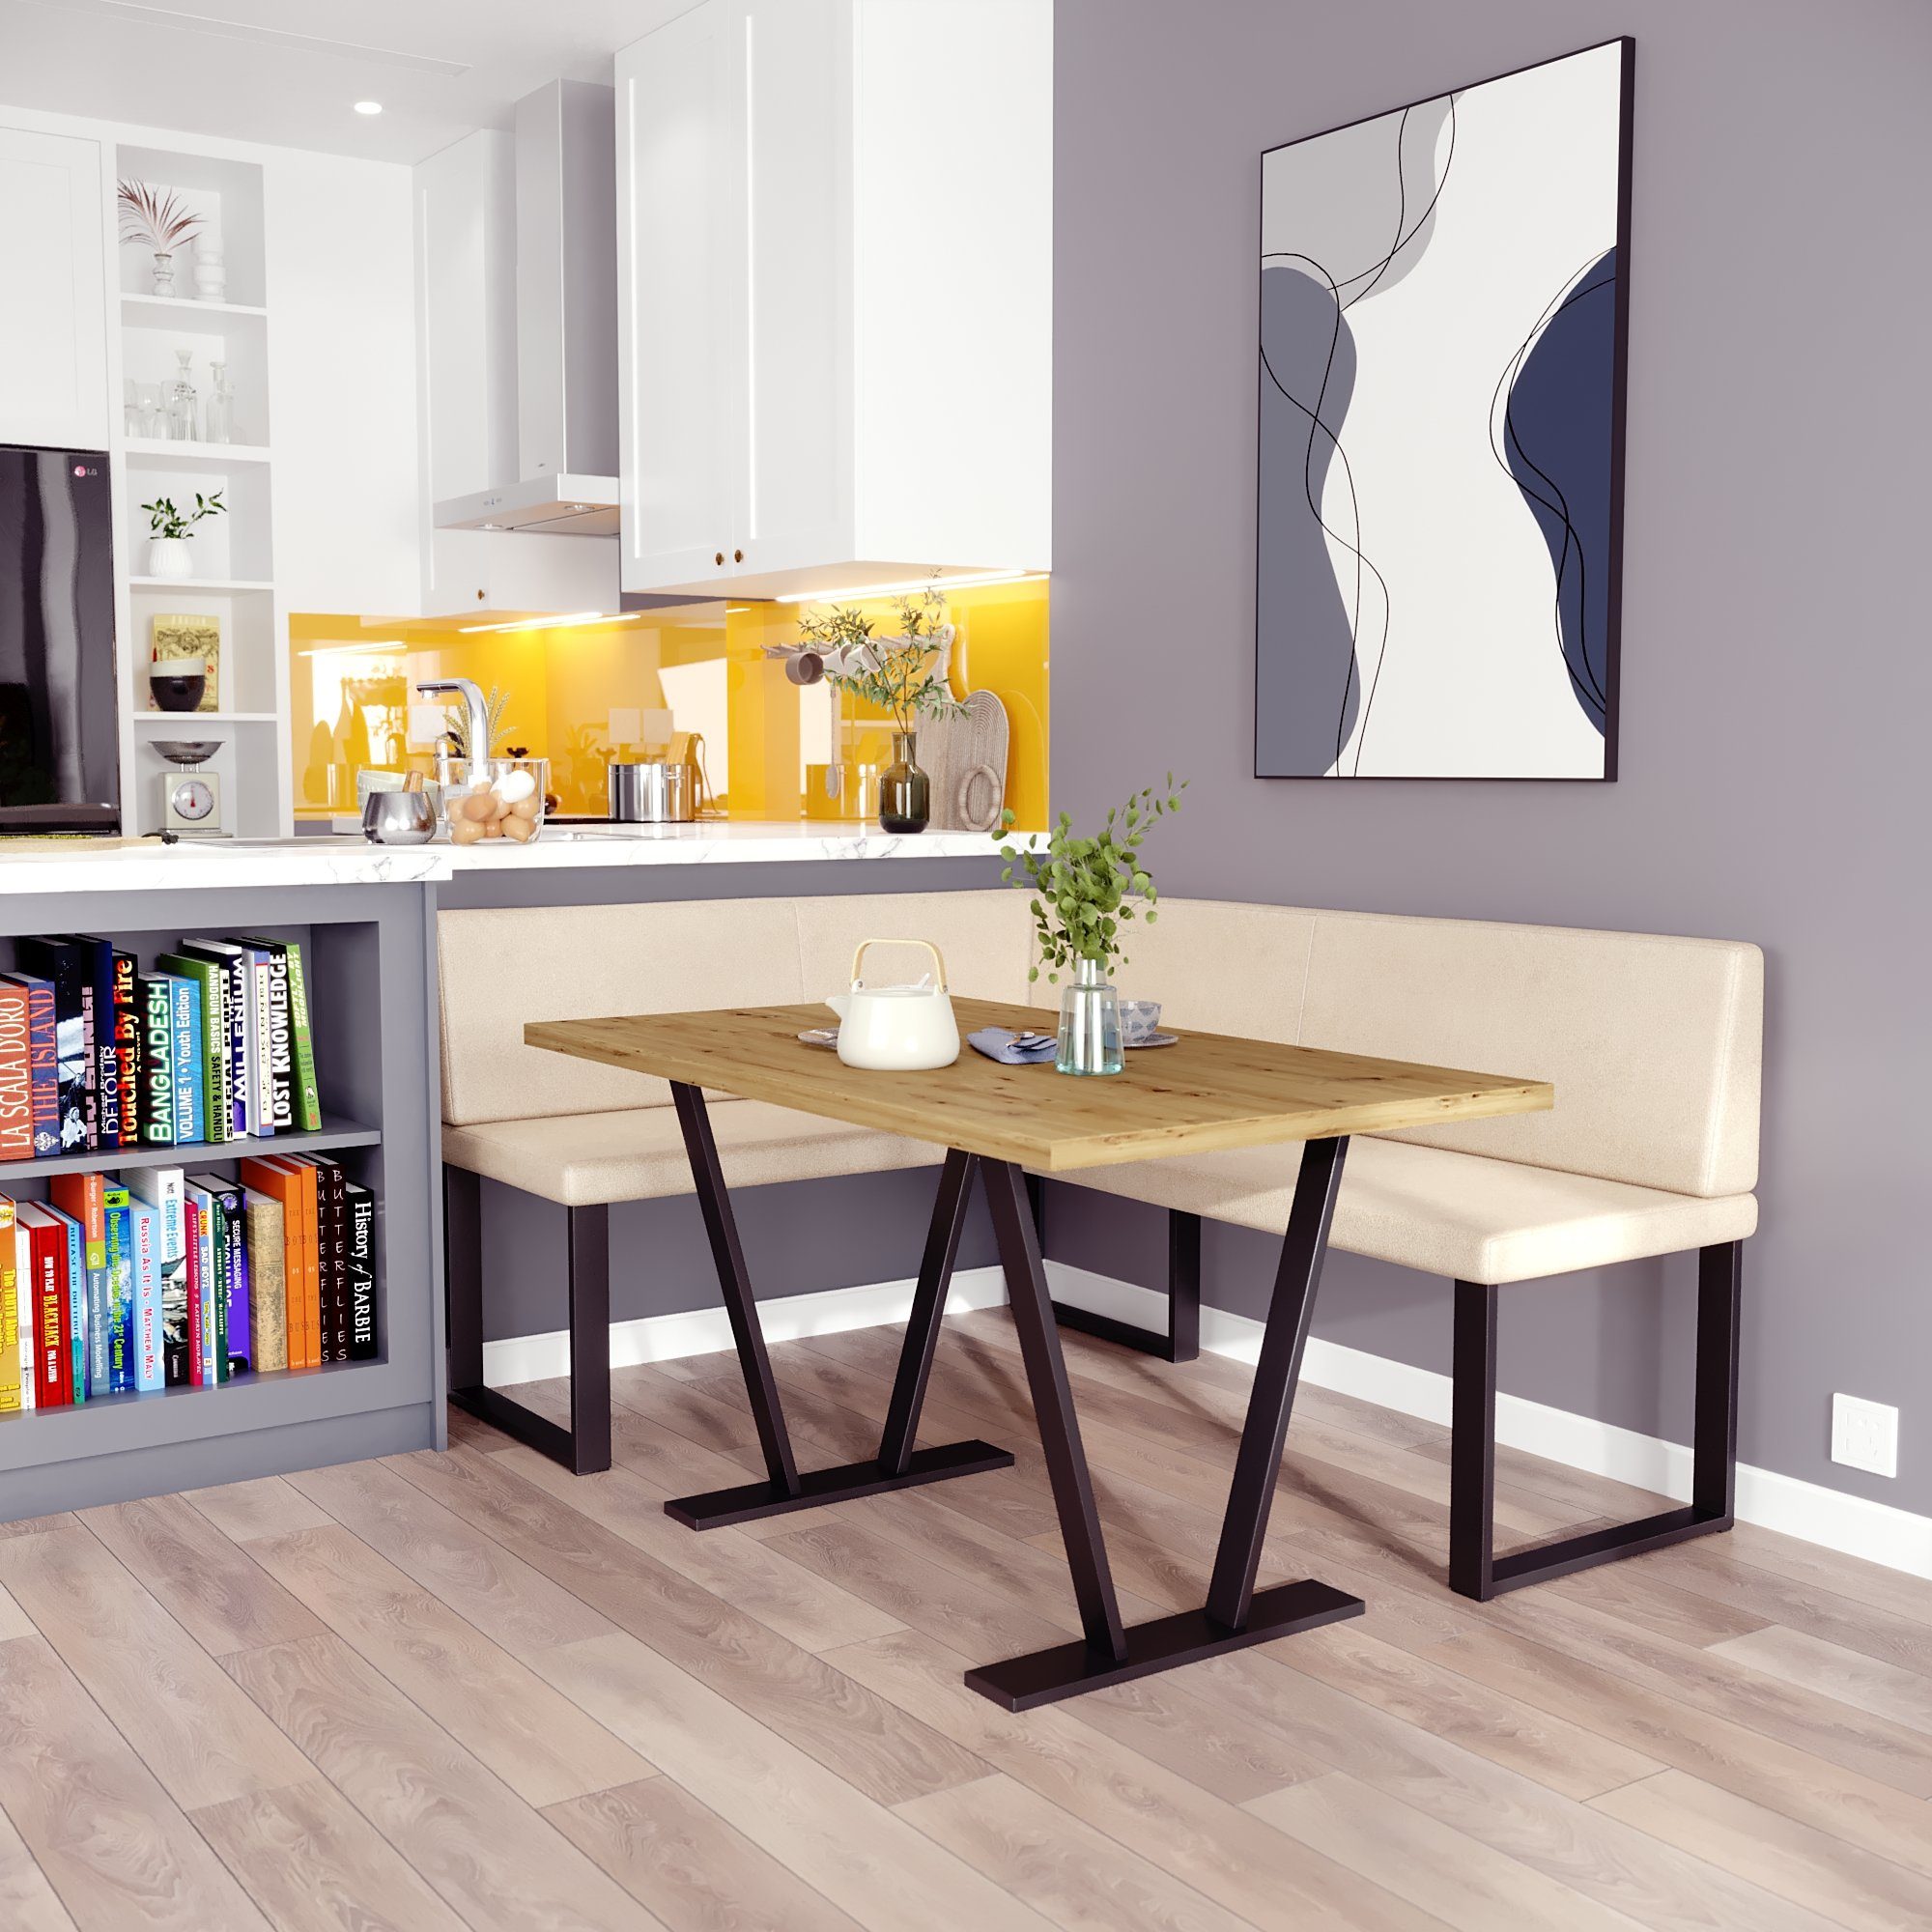 sofa4you Eckbankgruppe Alina Metall mit Tisch, Moderne Sitzecke perfekt für Ihr Esszimmer, Küche (128x168/142x196) beige